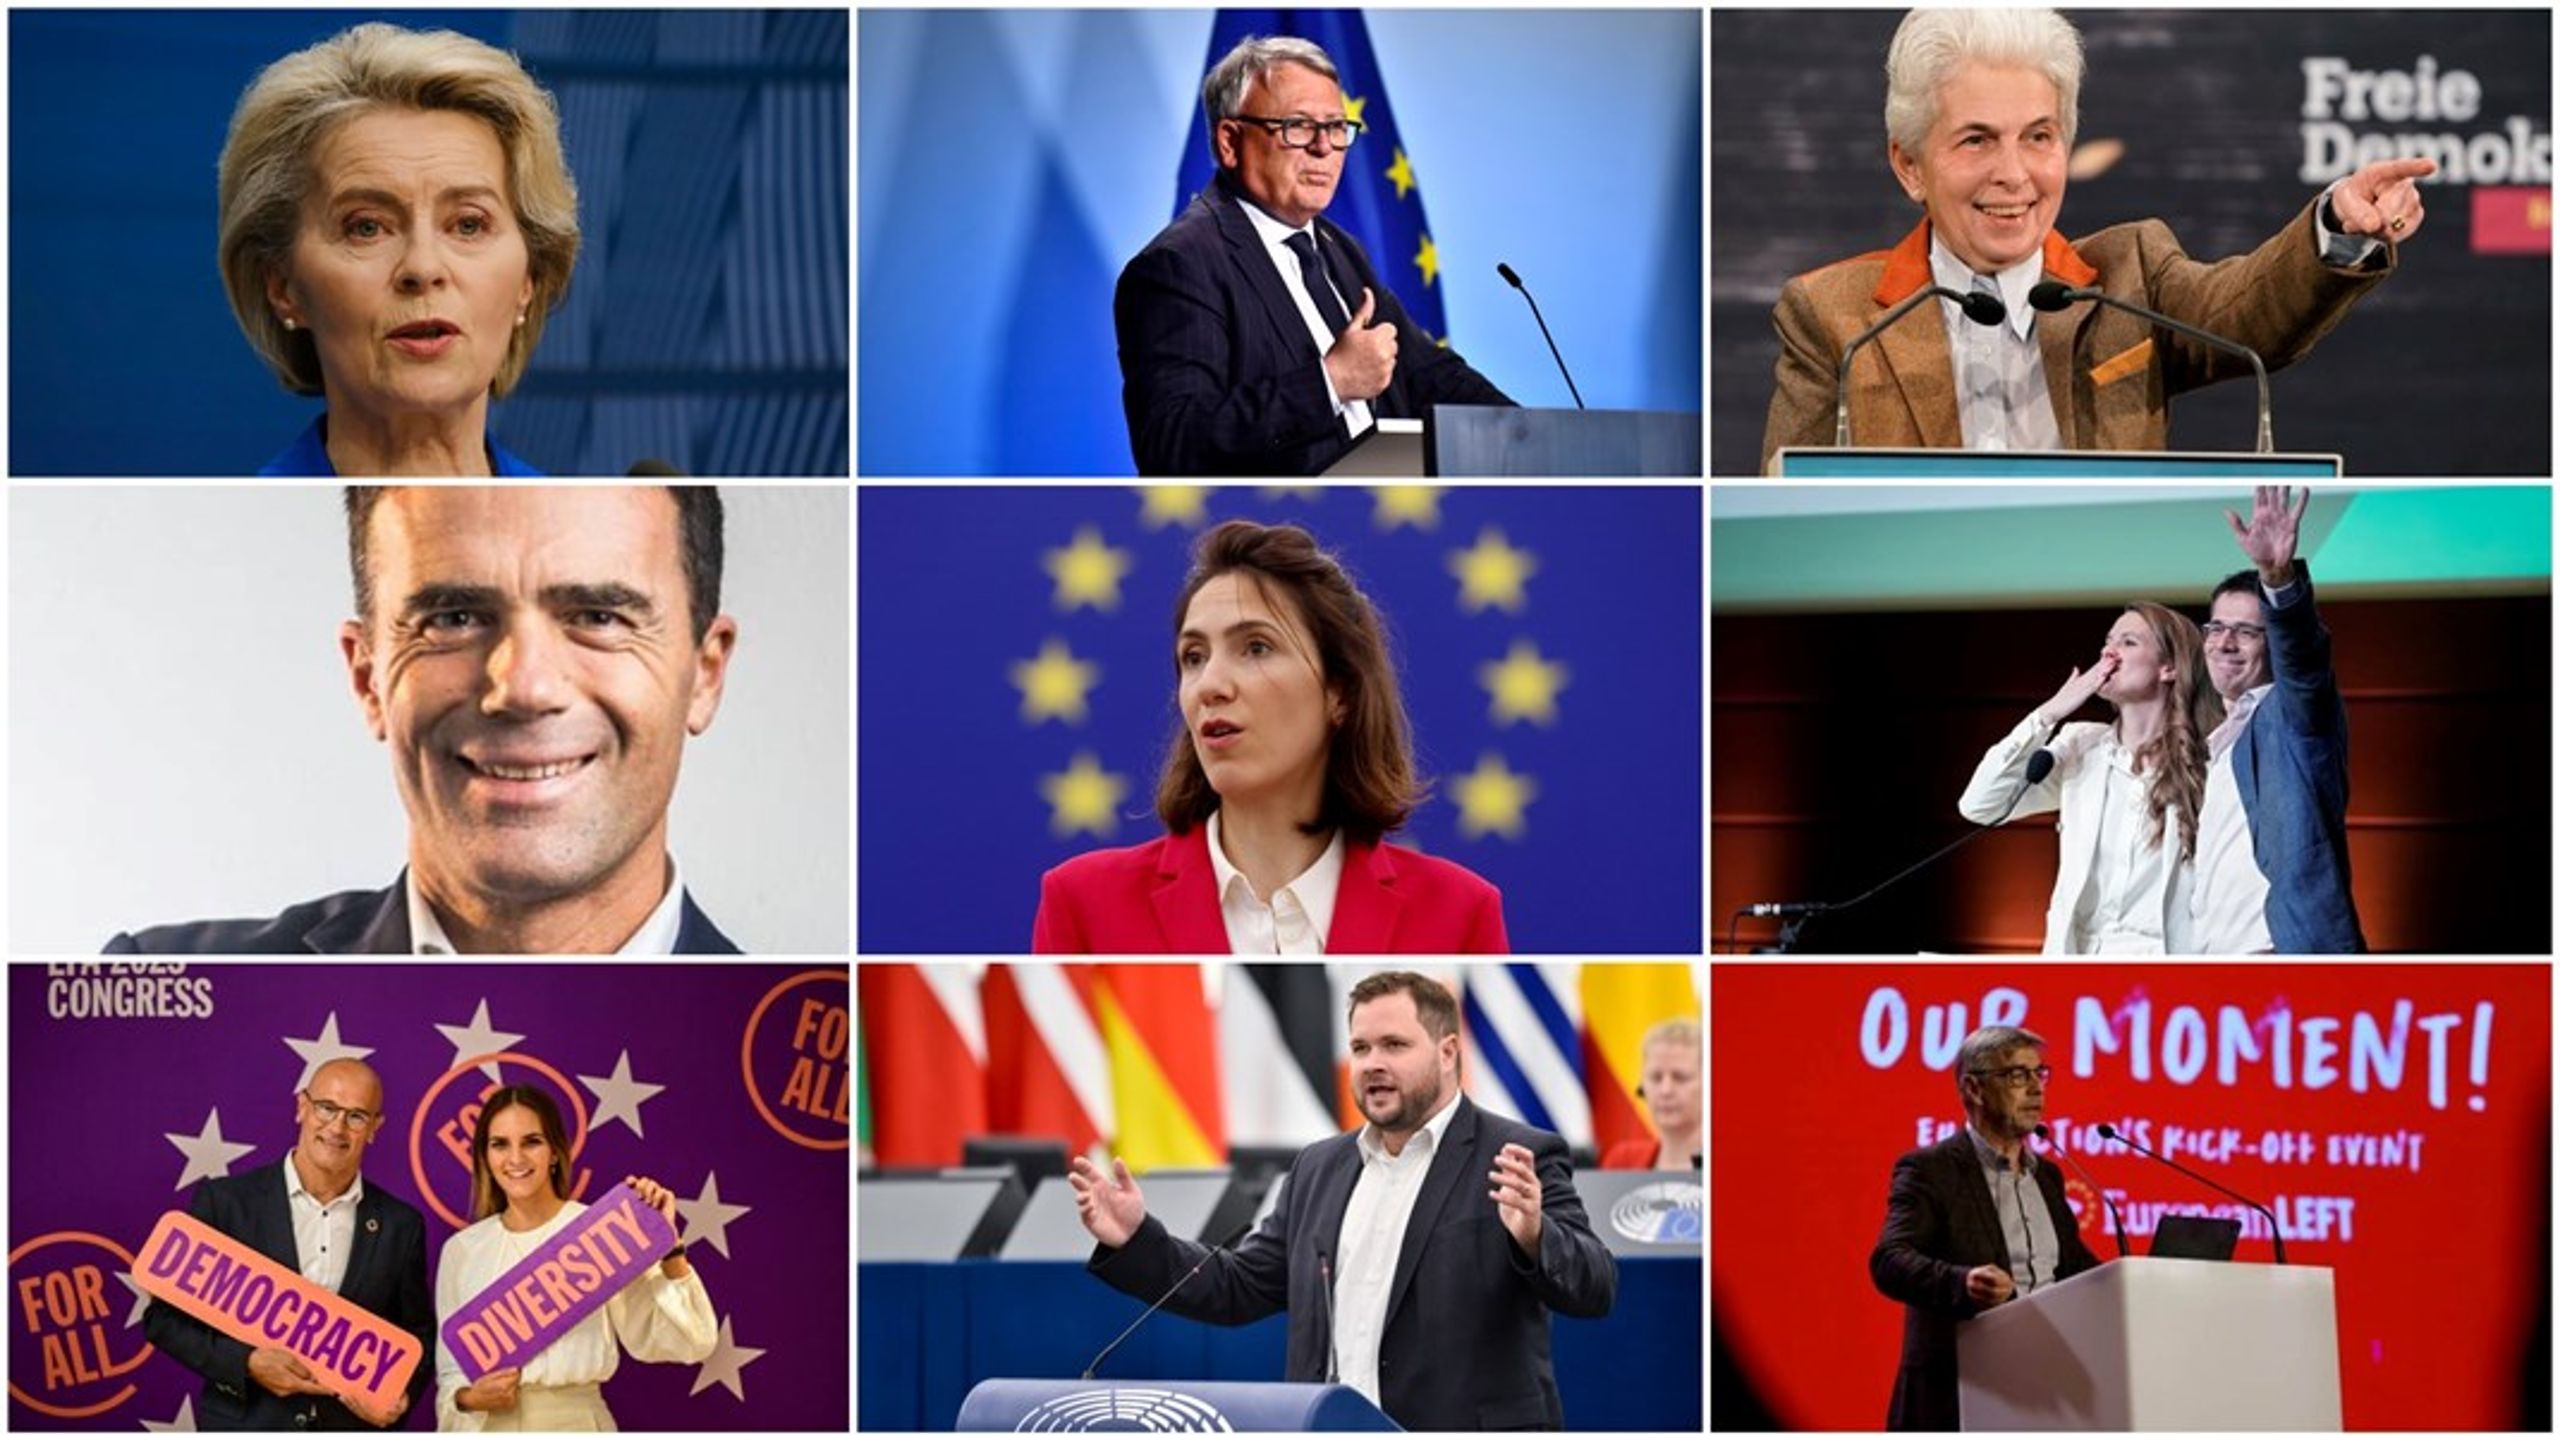 De flesta spetskandidaterna kommer från Tyskland och är väl etablerade i europeisk politik. Men även en student och en politiker från ett nationellt parlament&nbsp;återfinns bland de nominerade, dock båda tyskar.&nbsp;